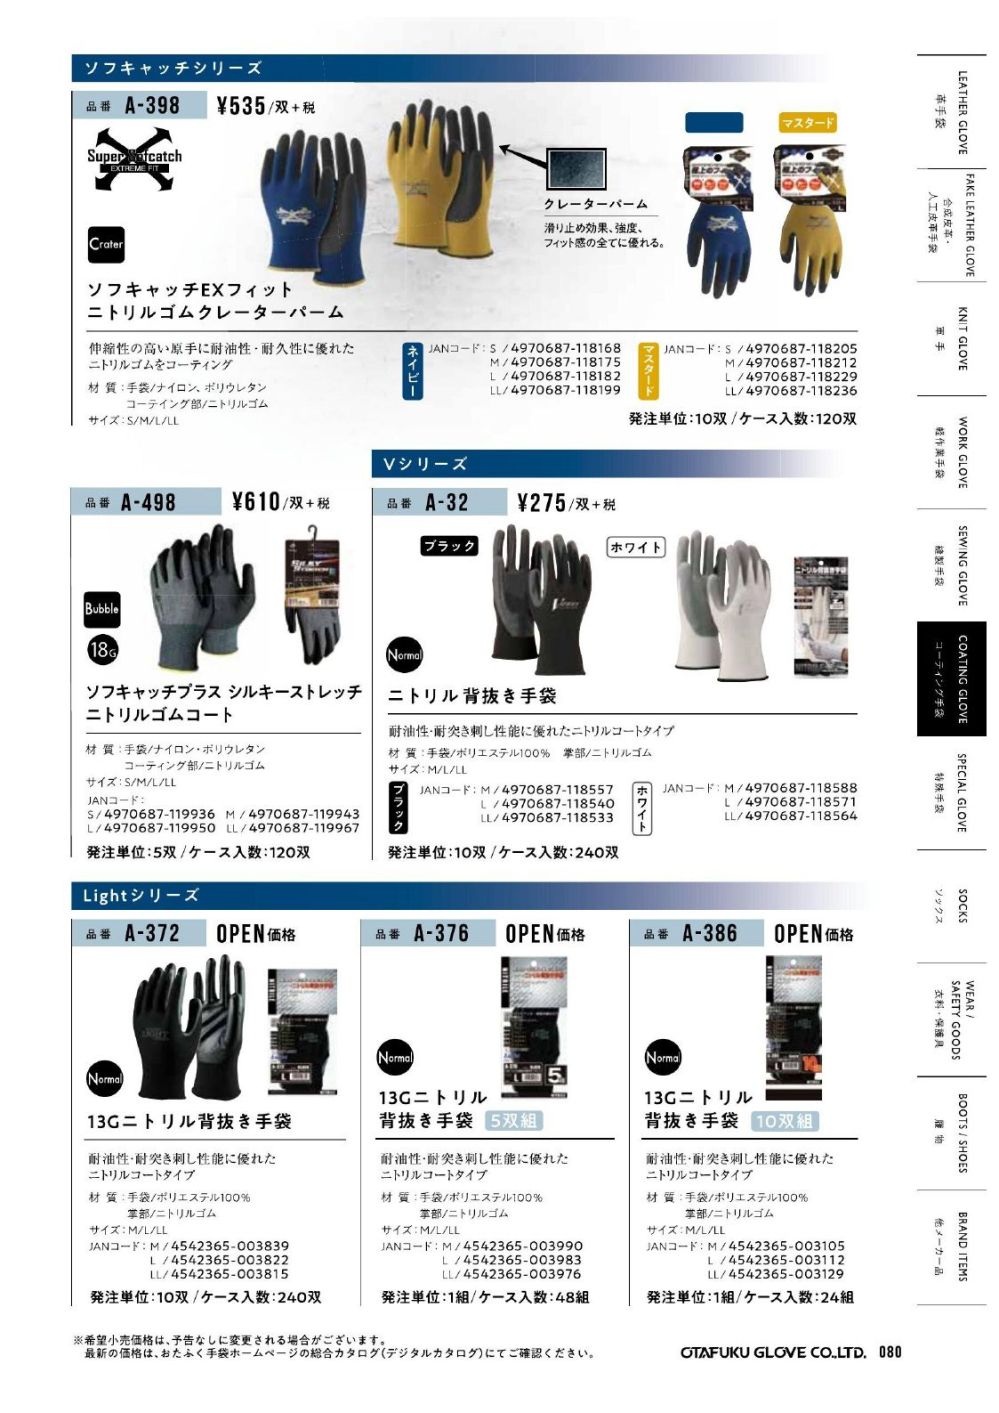 柔らかい LL (まとめ) Amazon.co.jp: おたふく手袋 ホワイト ニトリル